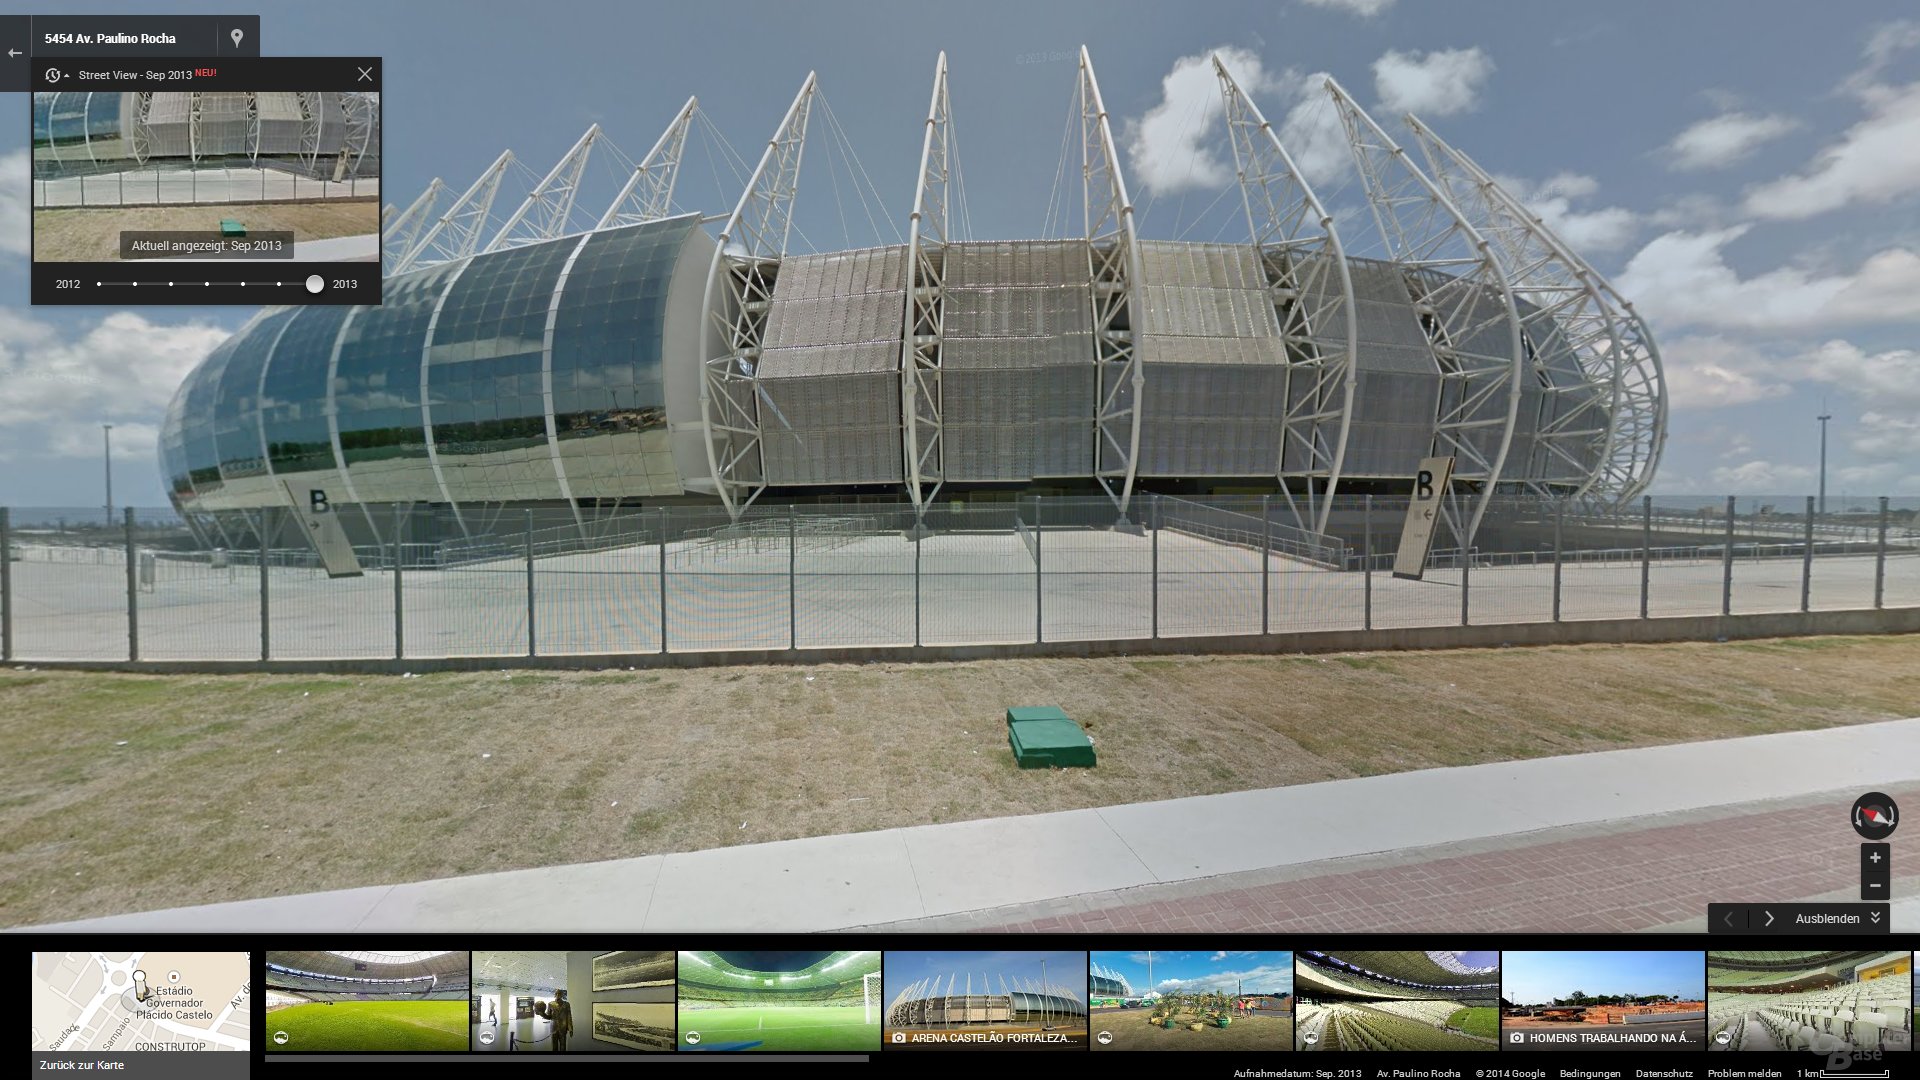 Zeitreise mit Google Street View: 2014 World Cup Stadium in Fortaleza, Brazil